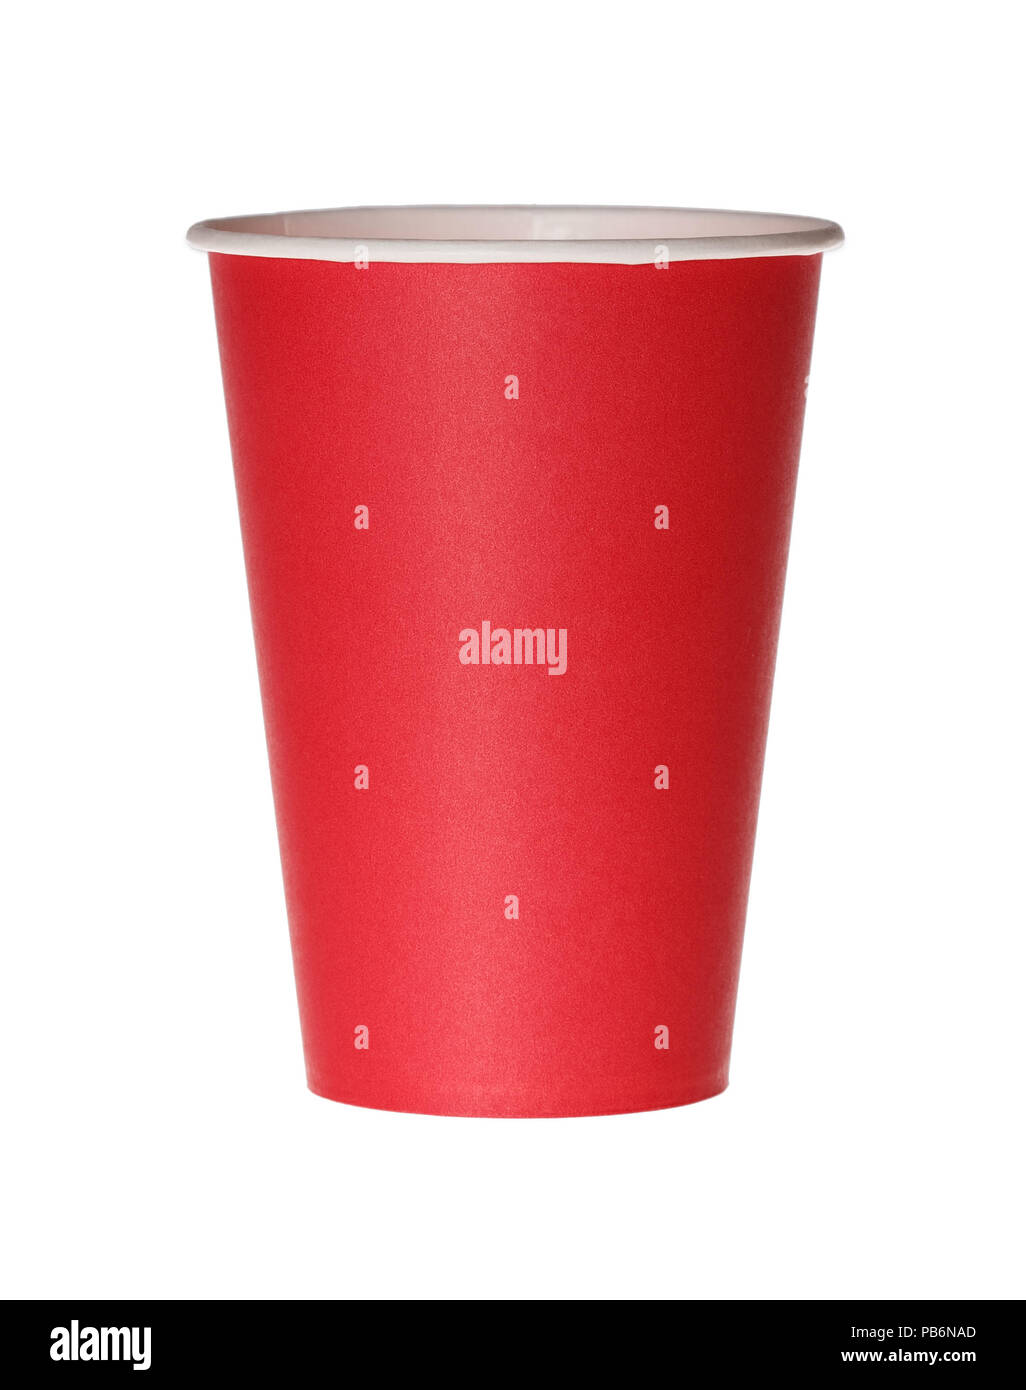 Vaso de papel rojo aislado en blanco. Foto de stock